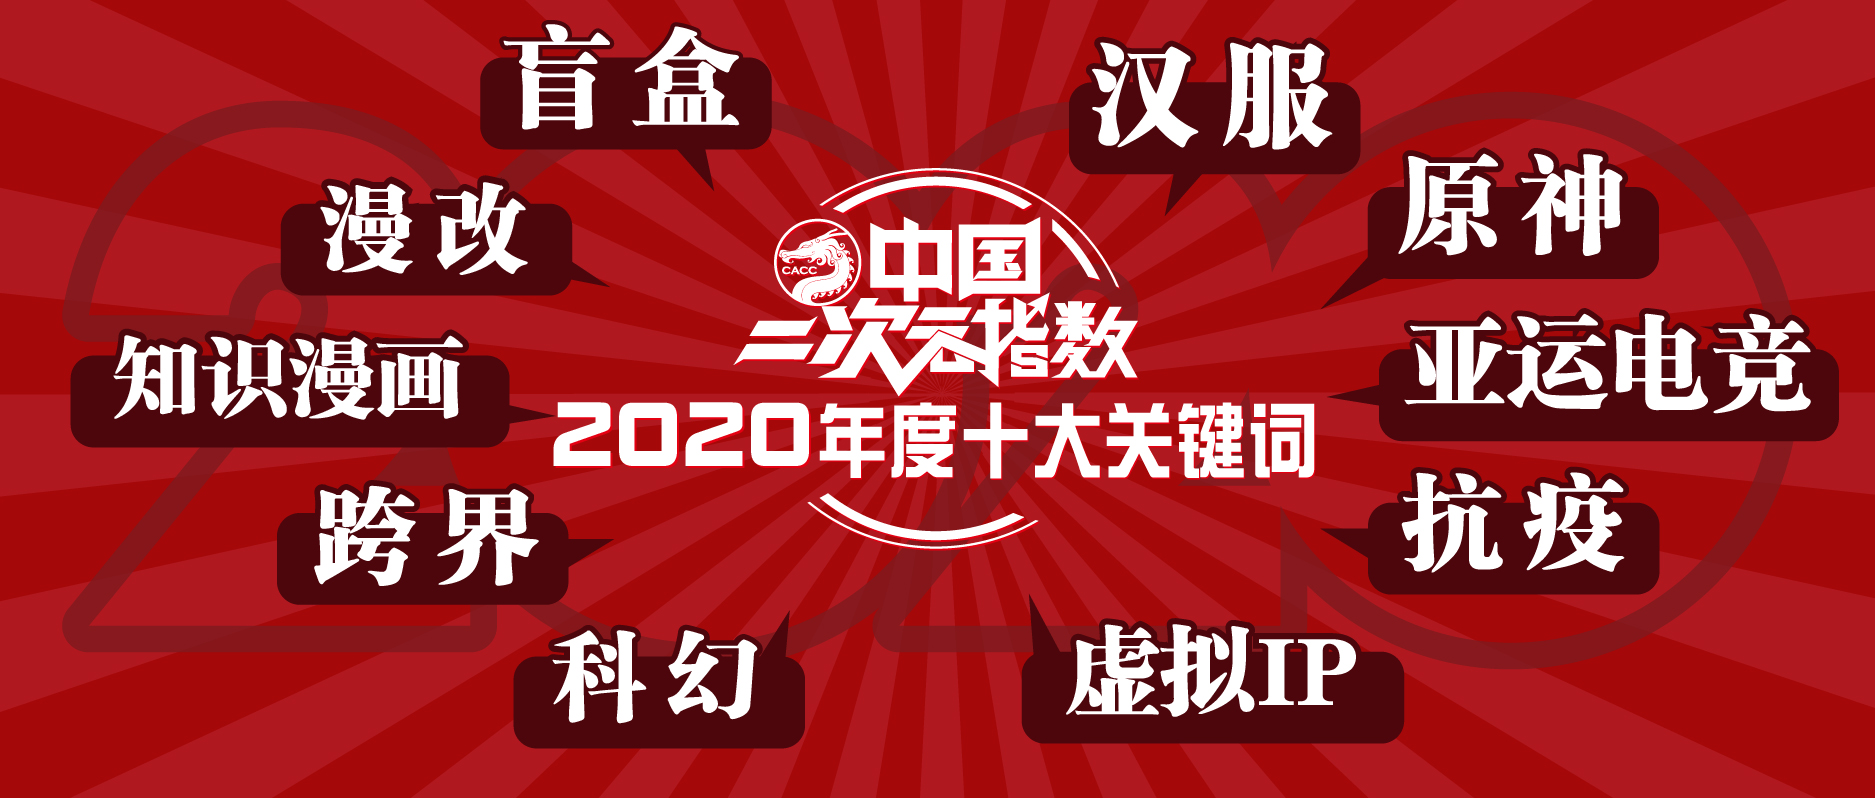 中国二次元指数“2020年度十大关键词”.jpg